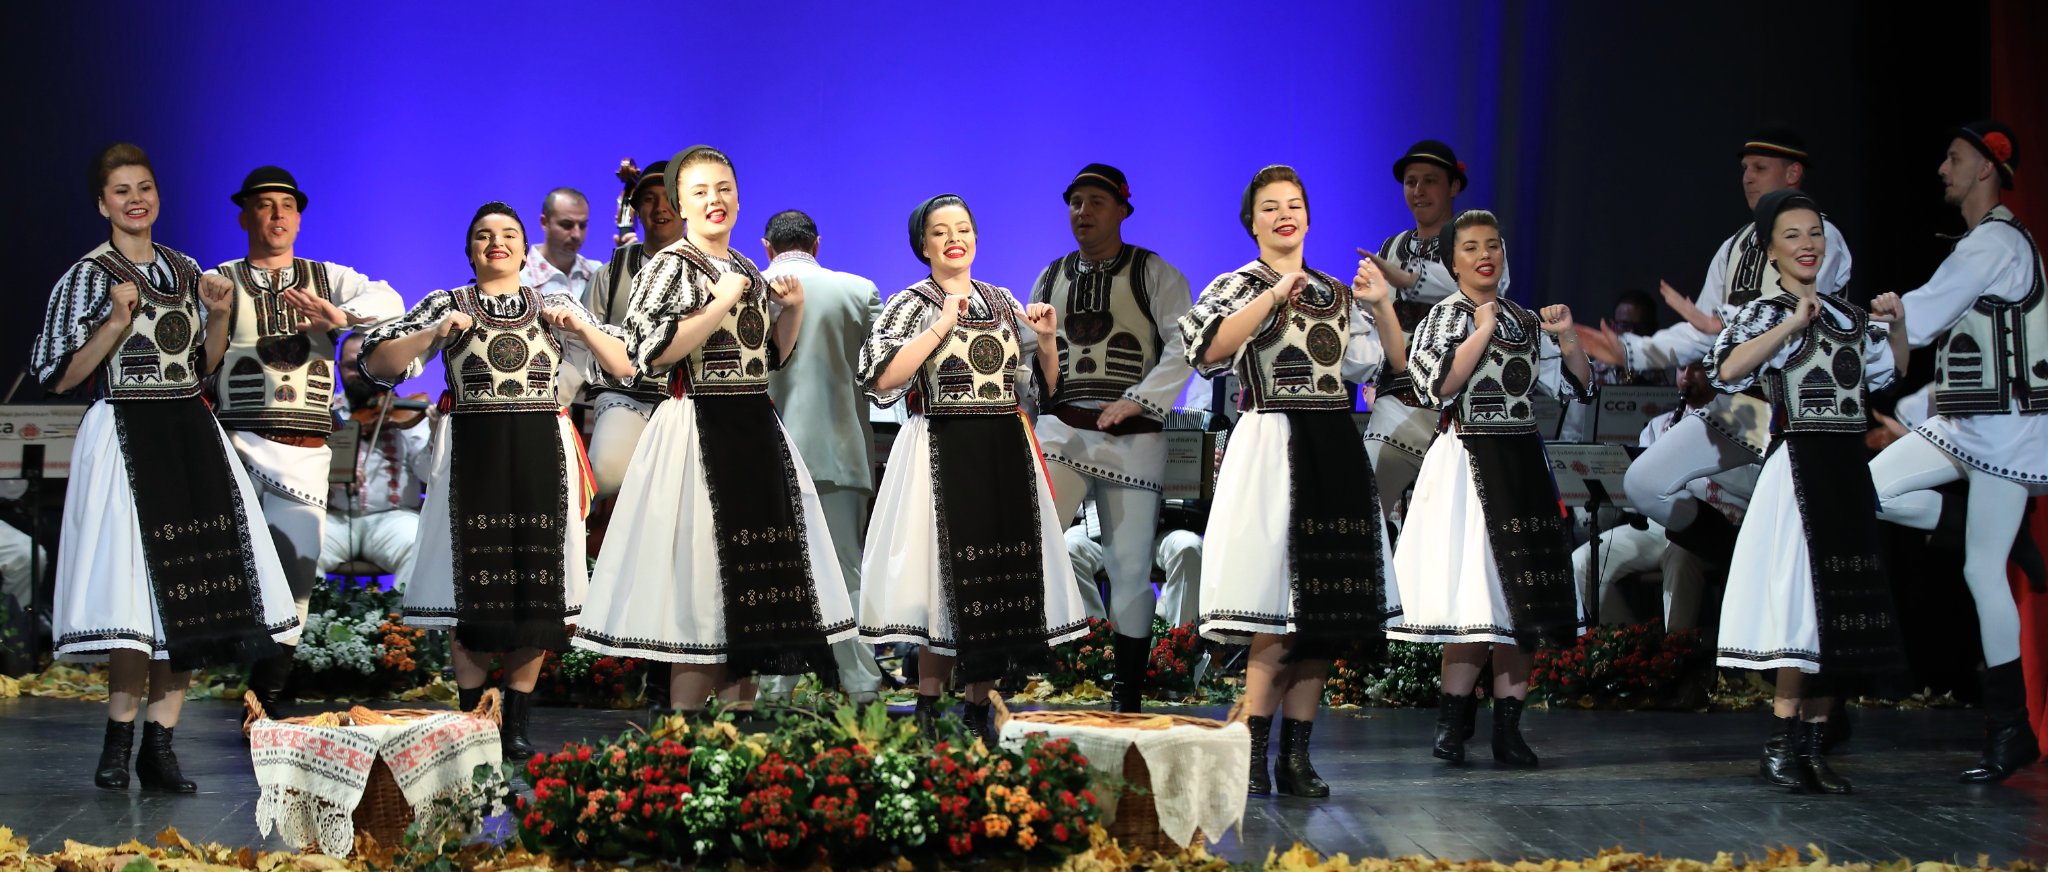 Spectacol folcloric la Hunedoara de Ziua Culturii Naționale